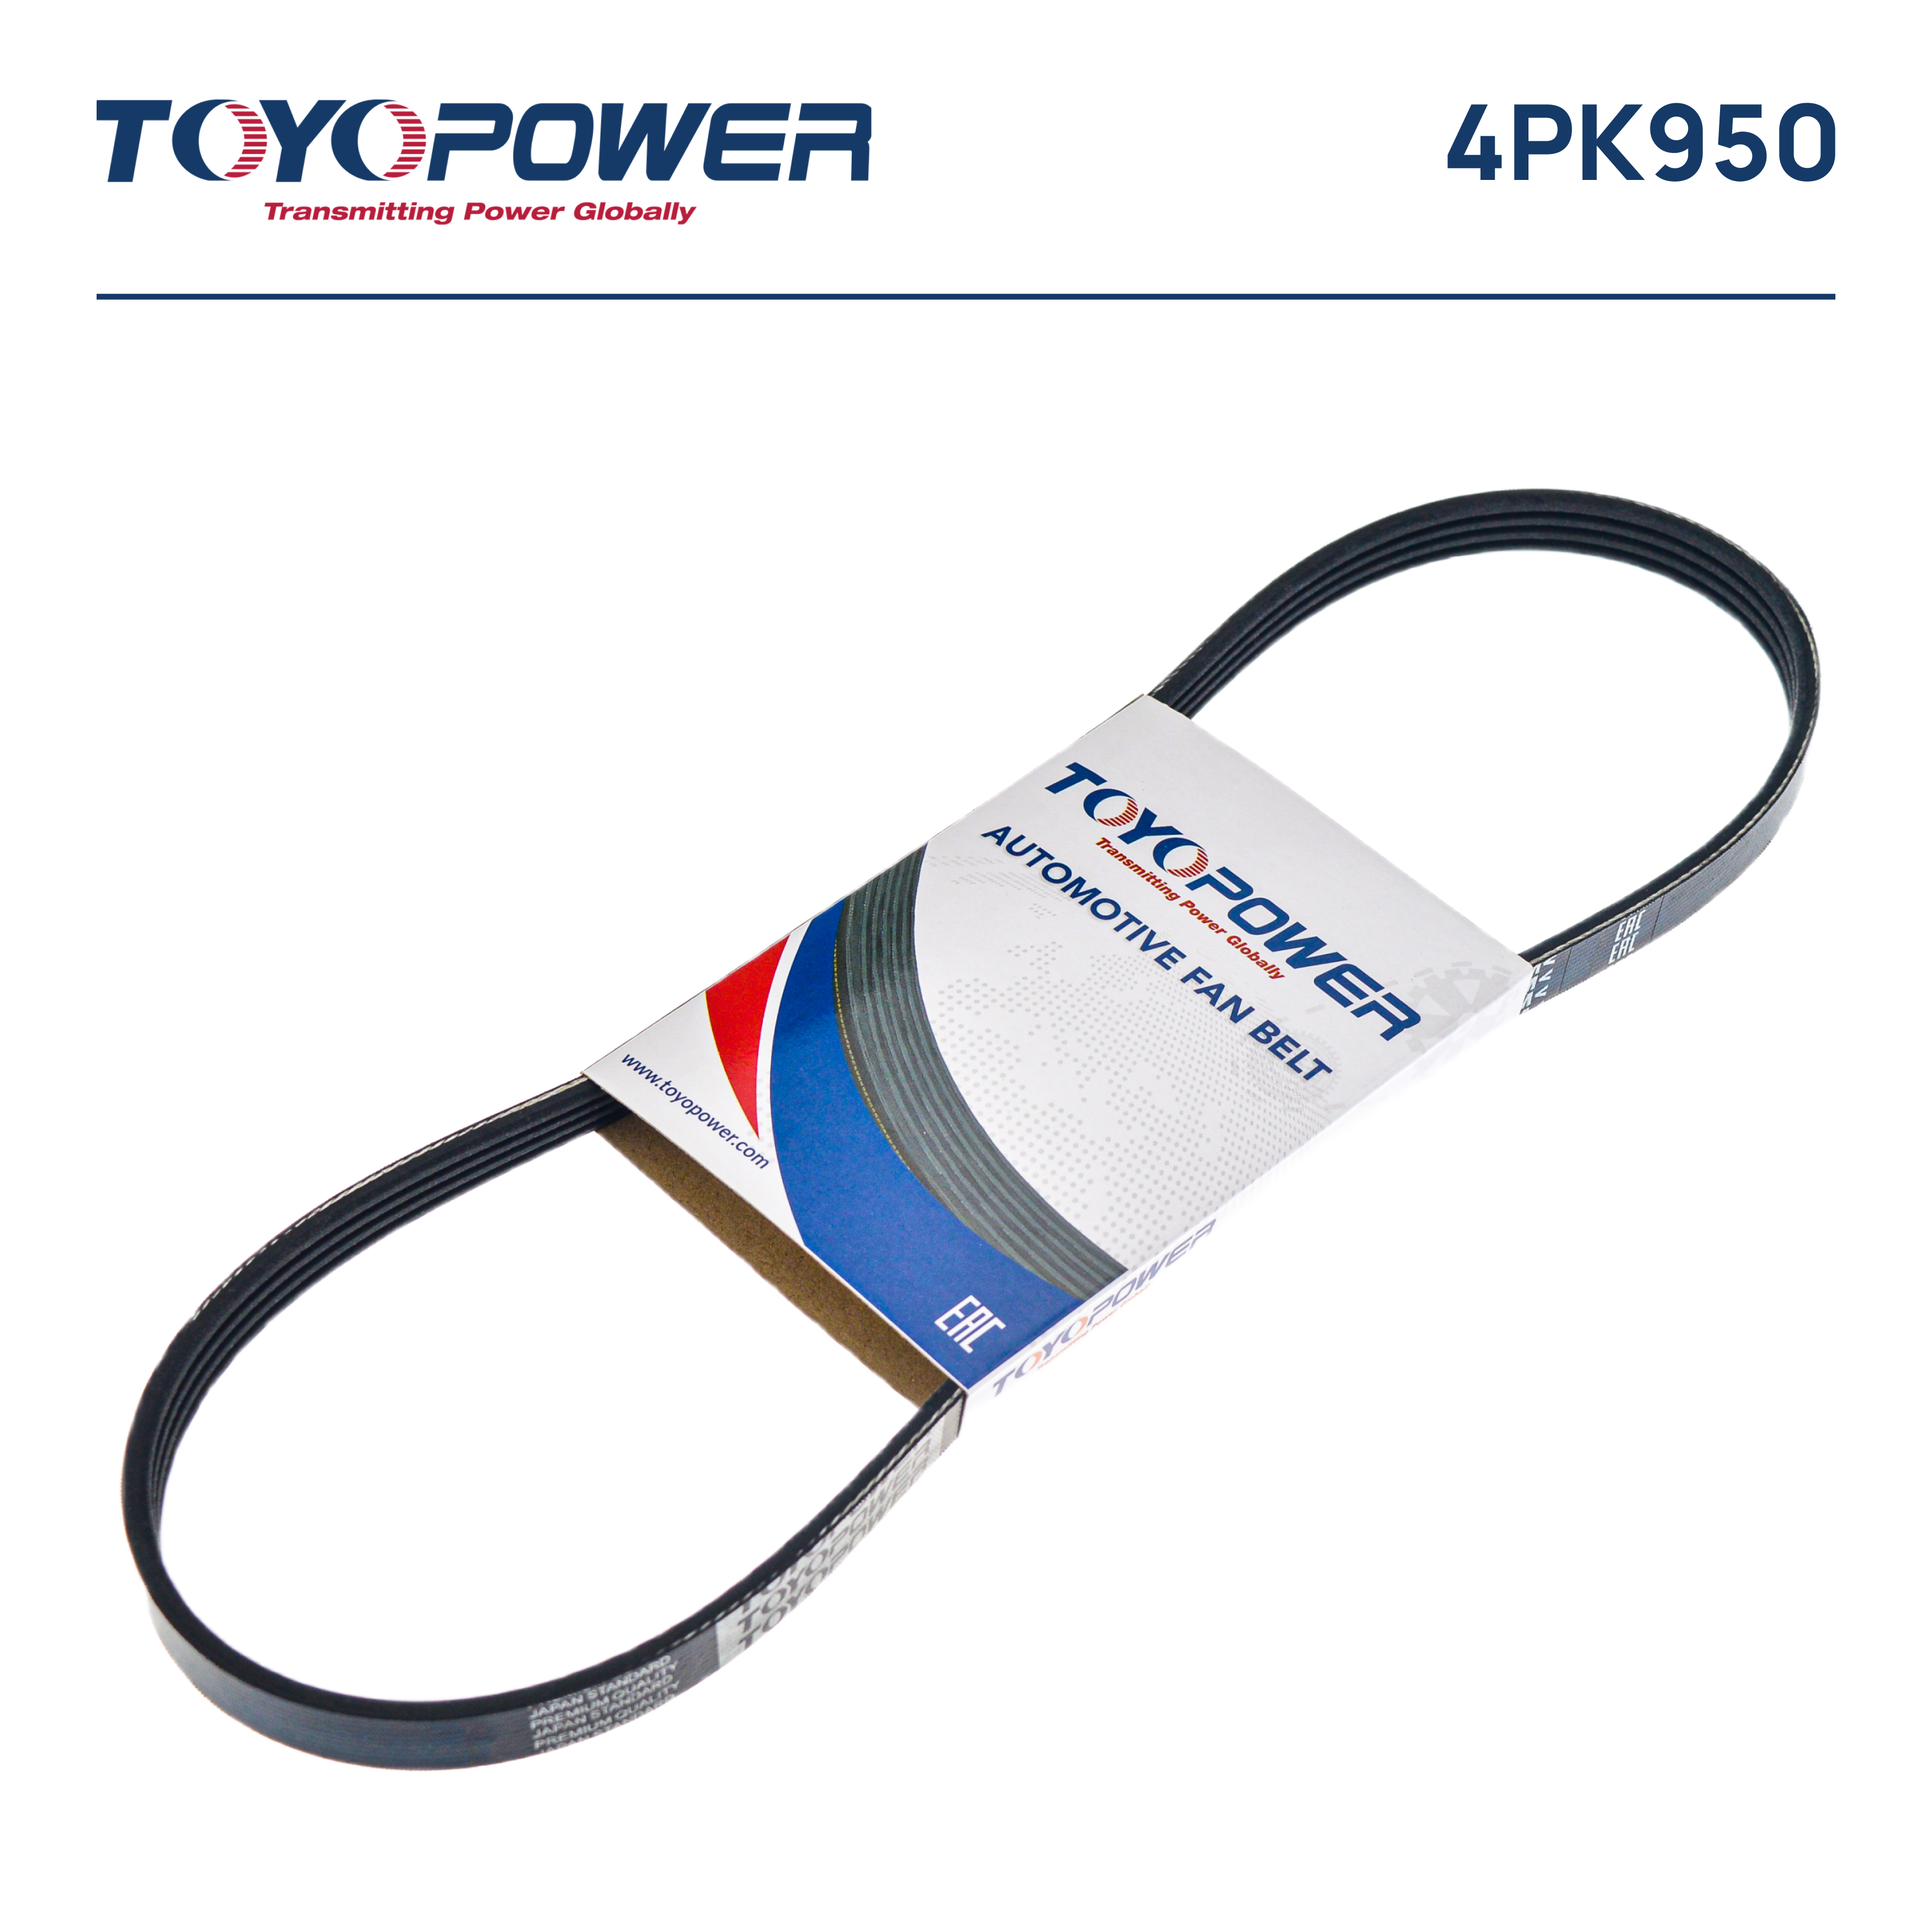 Ремень поликлиновый - Toyopower 4PK950